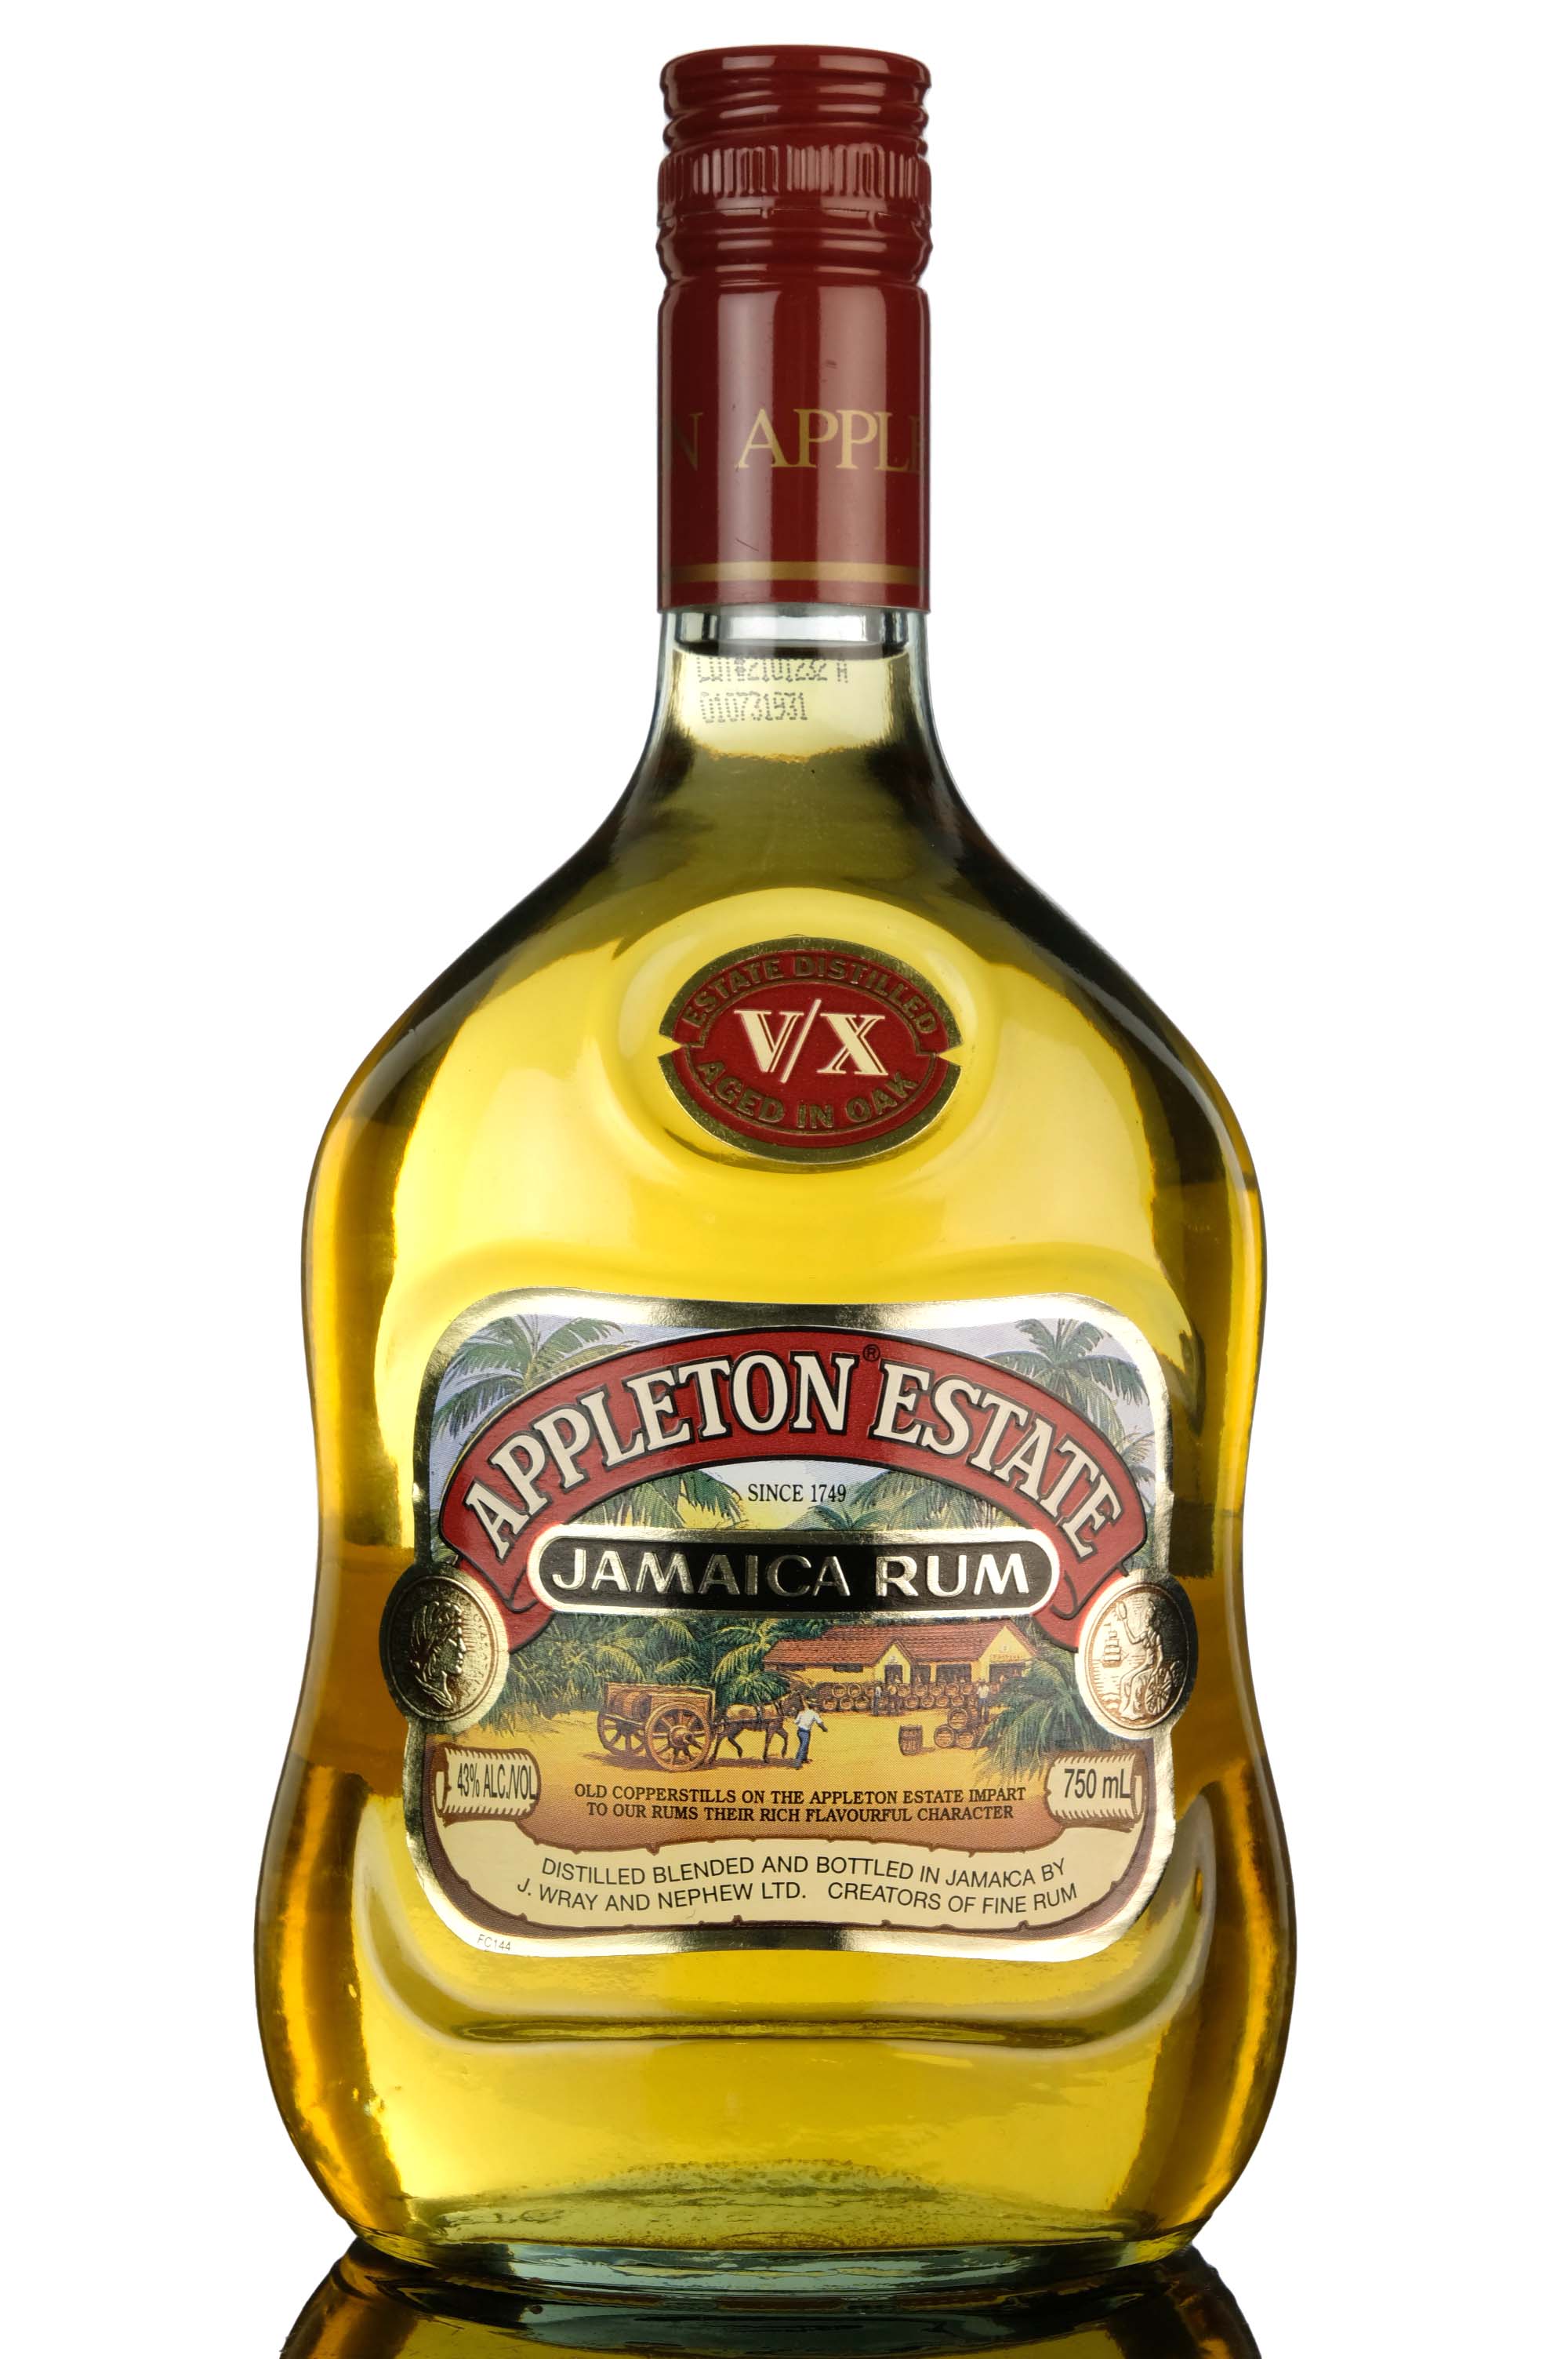 Appleton Estate VX Jamaica Rum